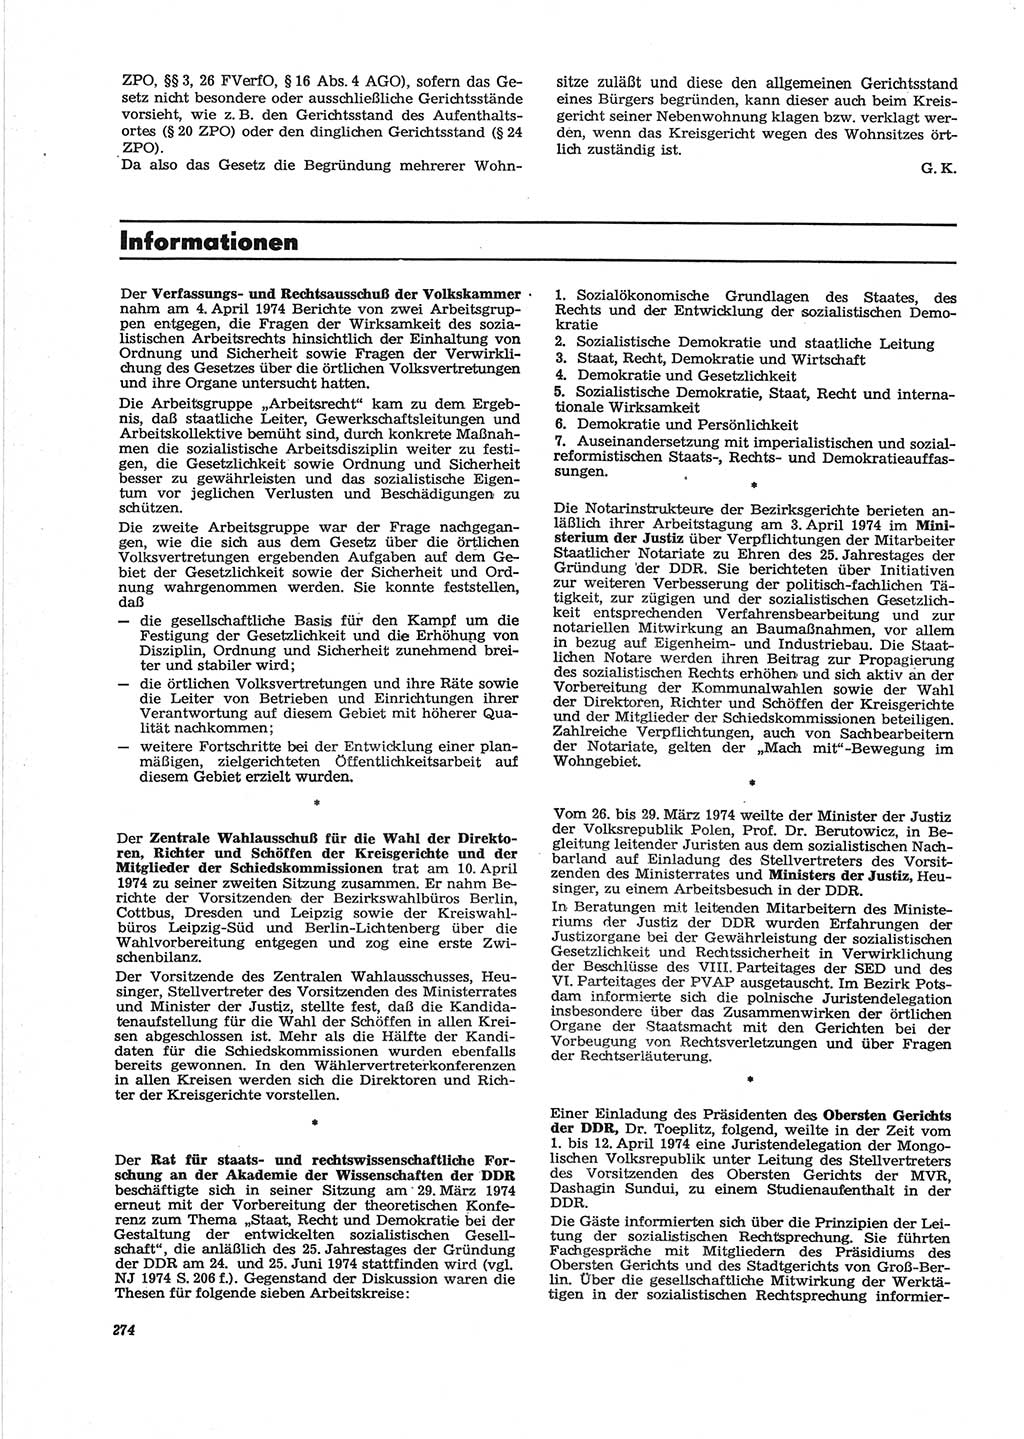 Neue Justiz (NJ), Zeitschrift für Recht und Rechtswissenschaft [Deutsche Demokratische Republik (DDR)], 28. Jahrgang 1974, Seite 274 (NJ DDR 1974, S. 274)